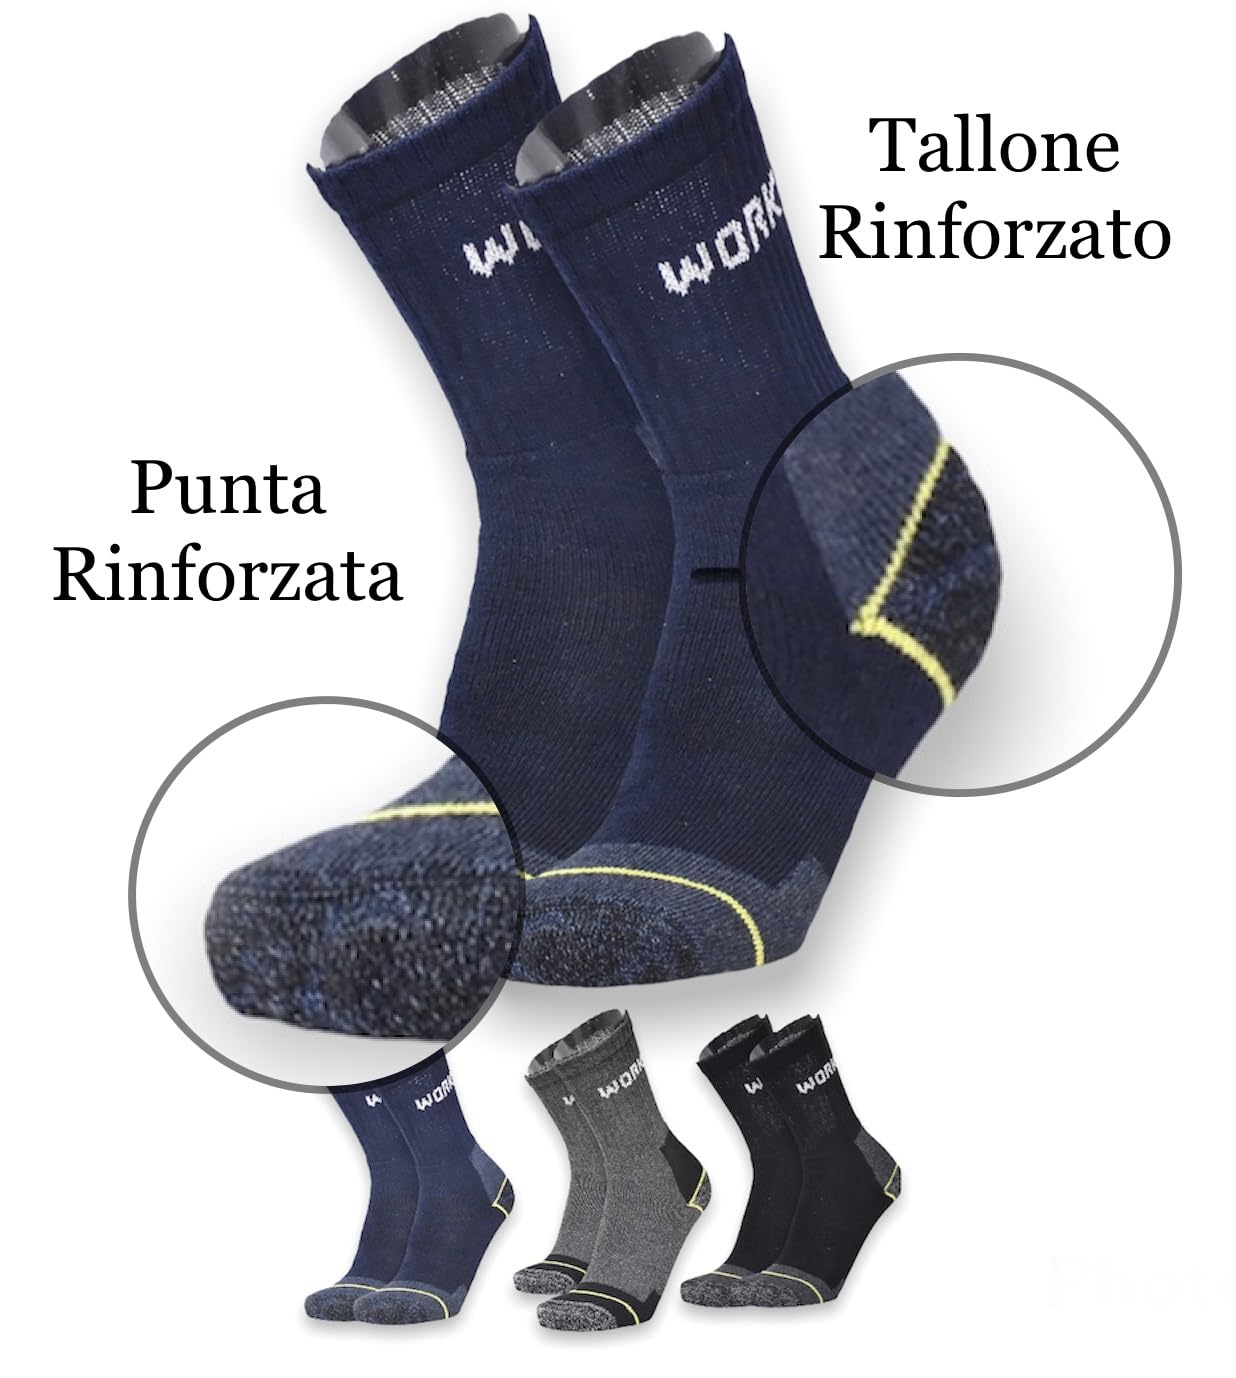 Lucchetti Socks Milano 6 Paia Calze da Lavoro Uomo in Spugna di Cotone Rinforzate Antinfortunistiche Nero o Assortito